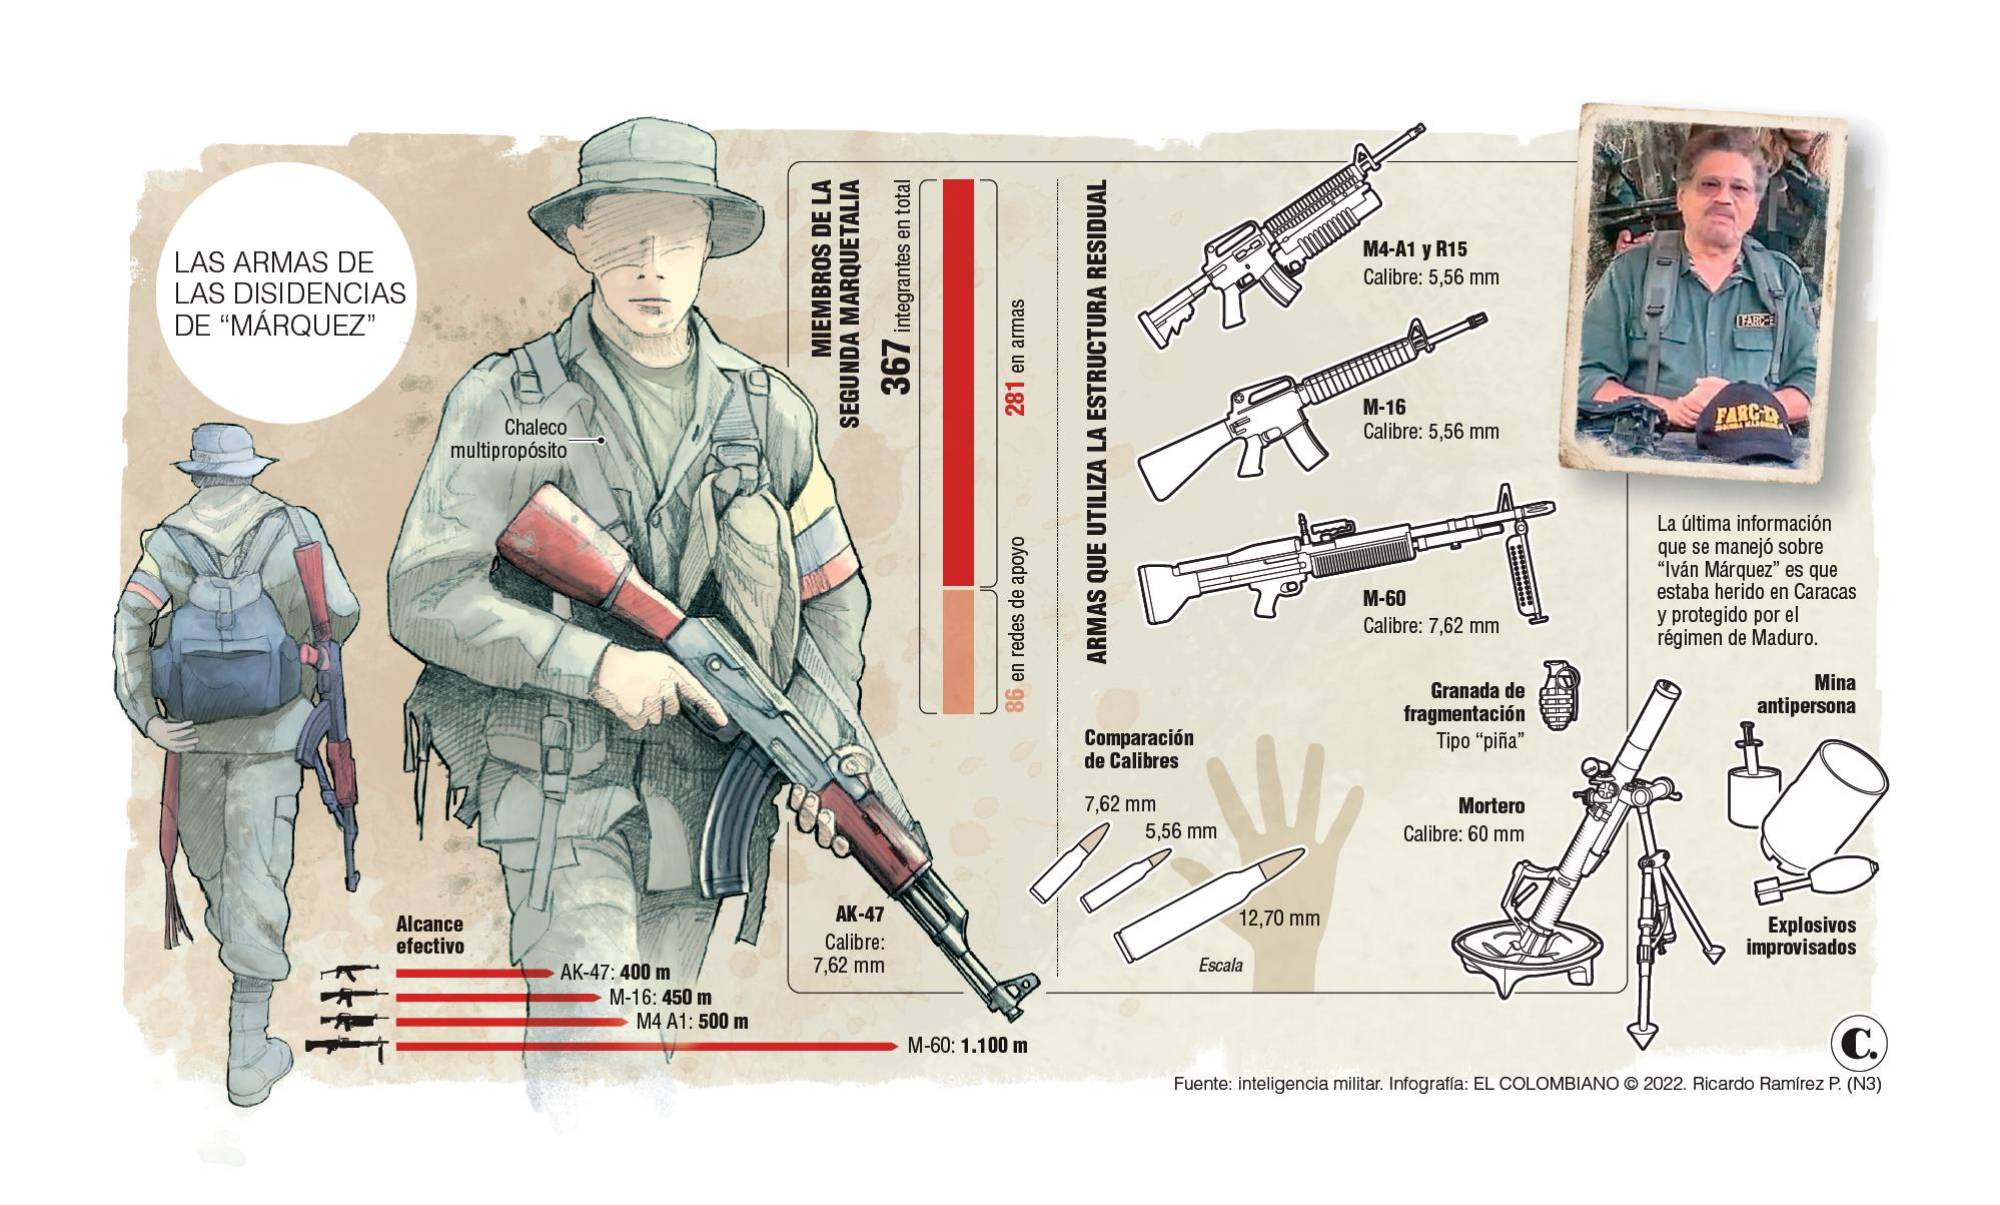 El dosier de armas y comandos de la “Segunda Marquetalia” de Márquez